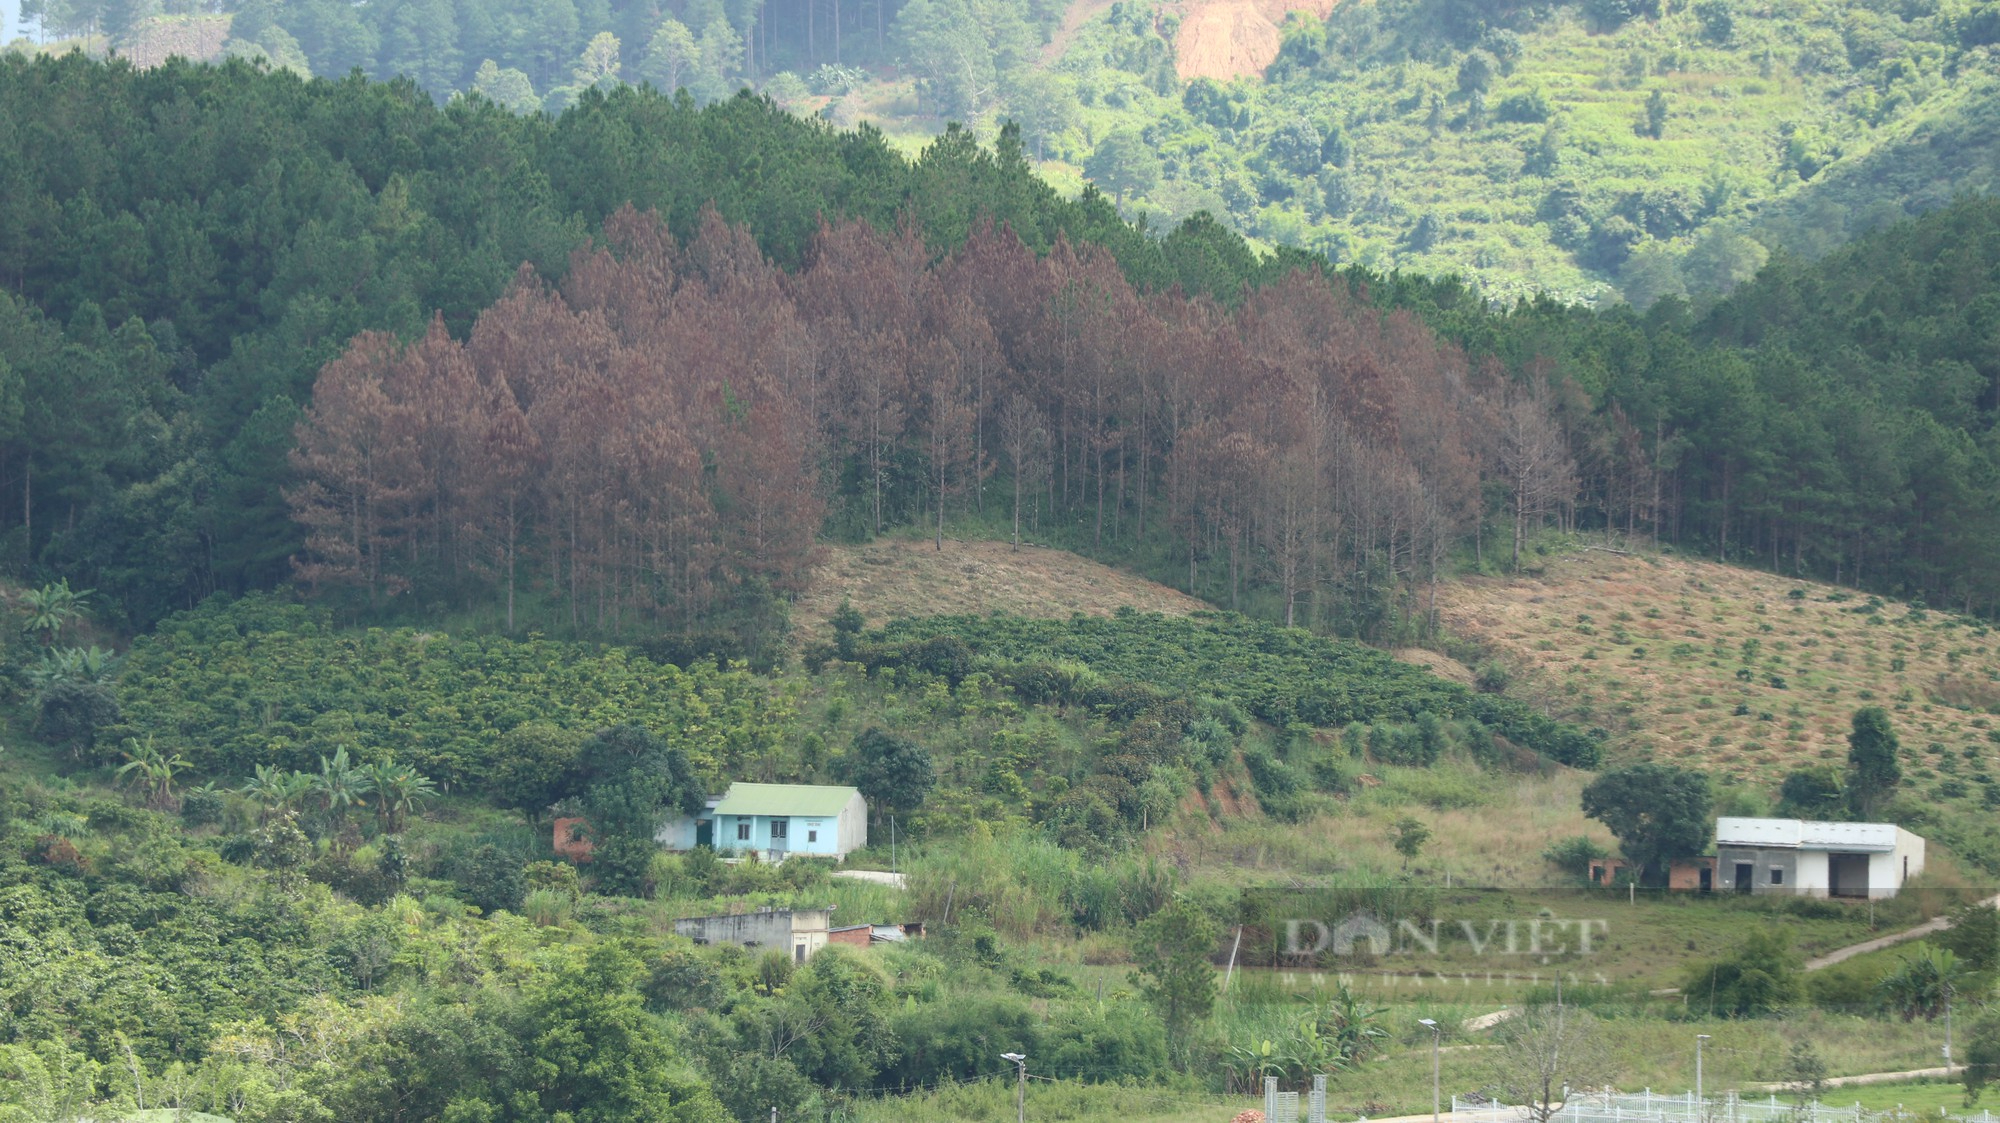 Phá rừng thông ở Lâm Đồng: Hàng trăm cây thông 3 lá nằm la liệt, huyện hỏa tốc chỉ đạo xử lý - Ảnh 8.